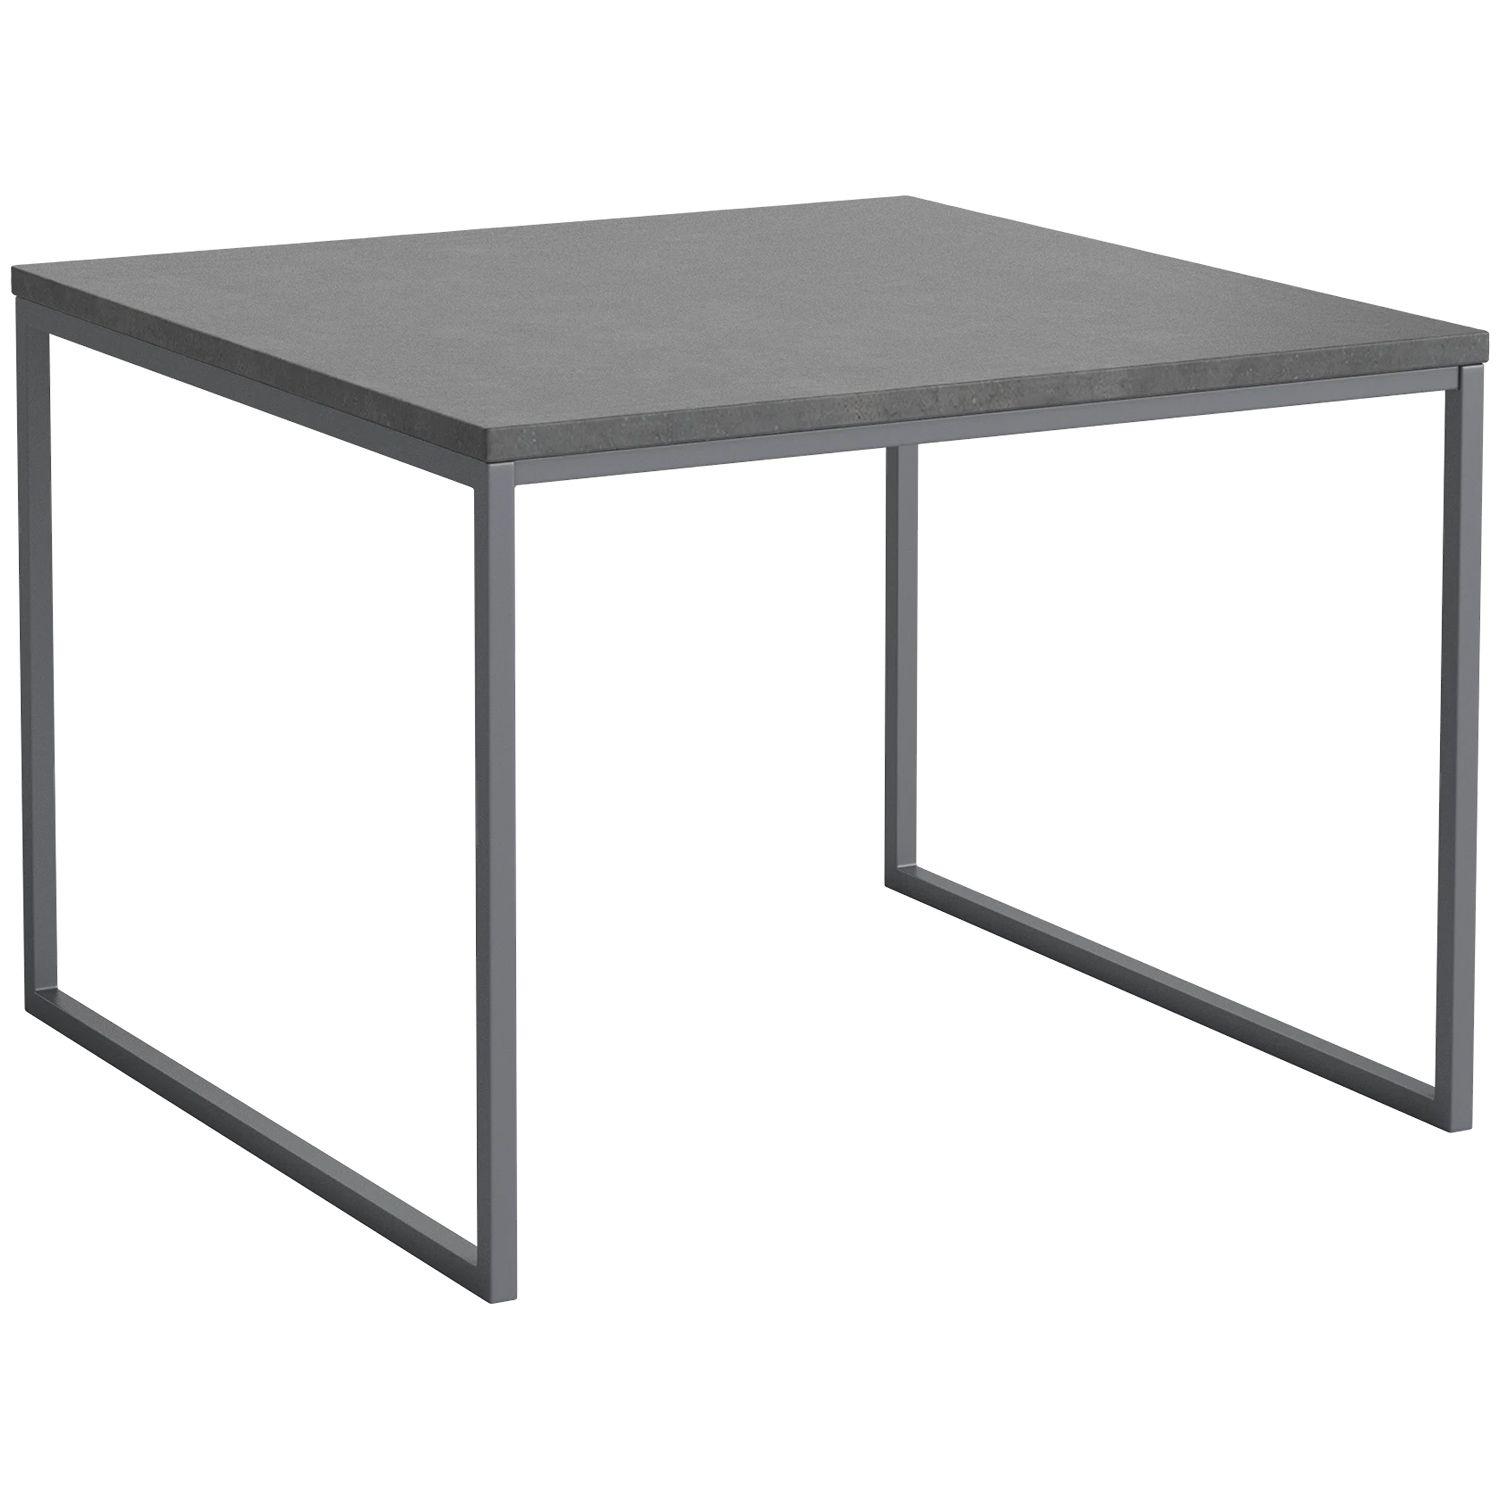 Bolia designové zahradní stoly Como Outdoor Coffee Table (výška 42 cm) - DESIGNPROPAGANDA